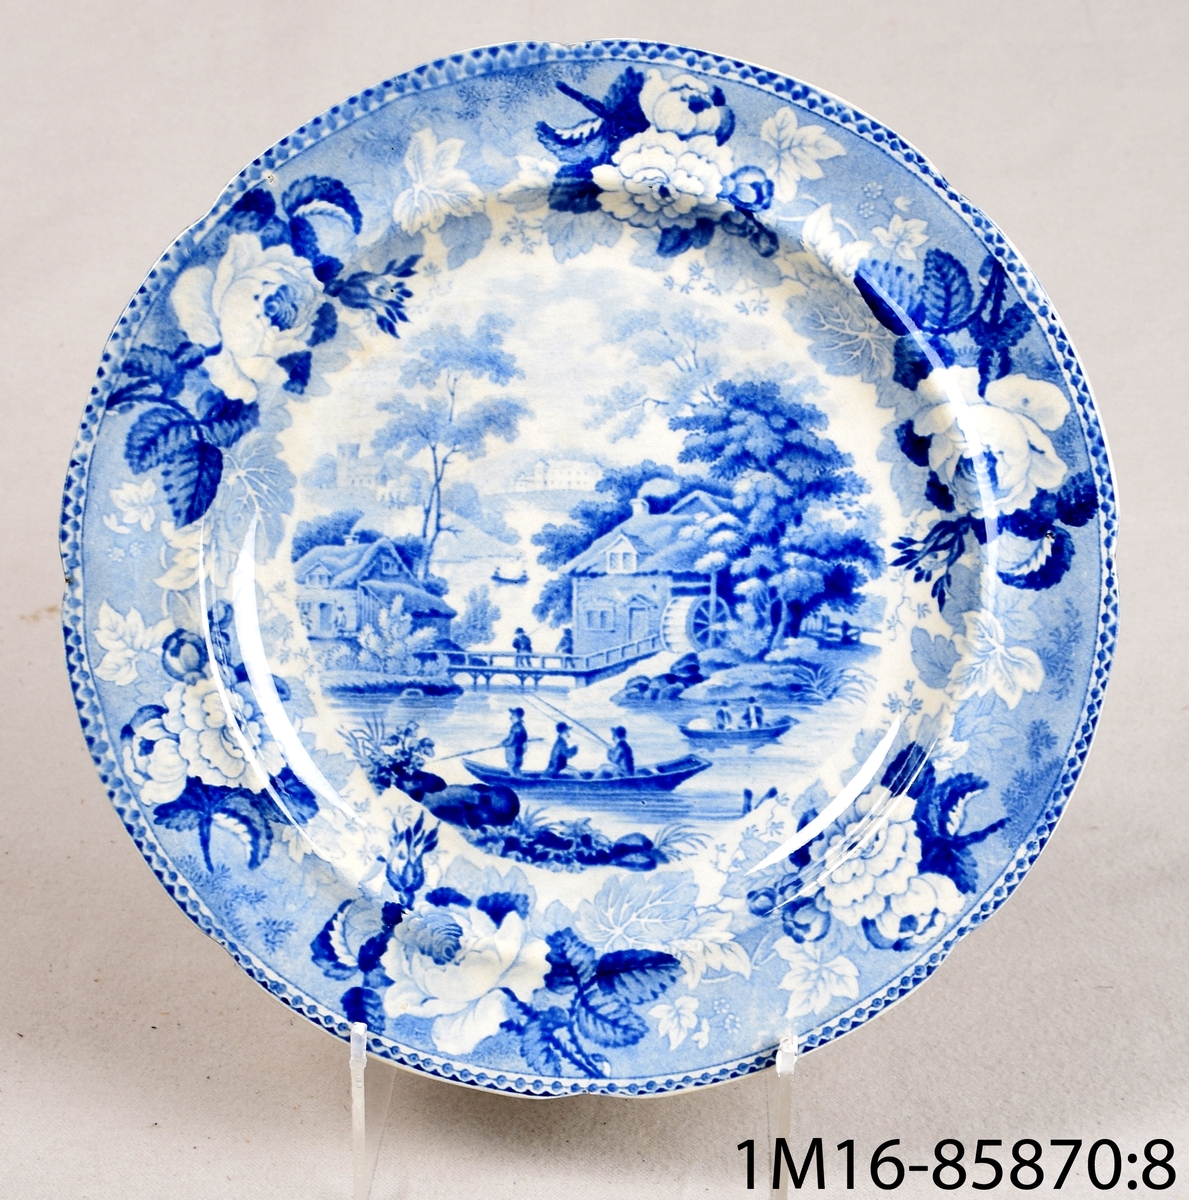 Vit rund tallrik av flintgods med tryckt blå dekor. Dekornamn: 1828 års landskapsmönster. Tillverkare: Rörstrand